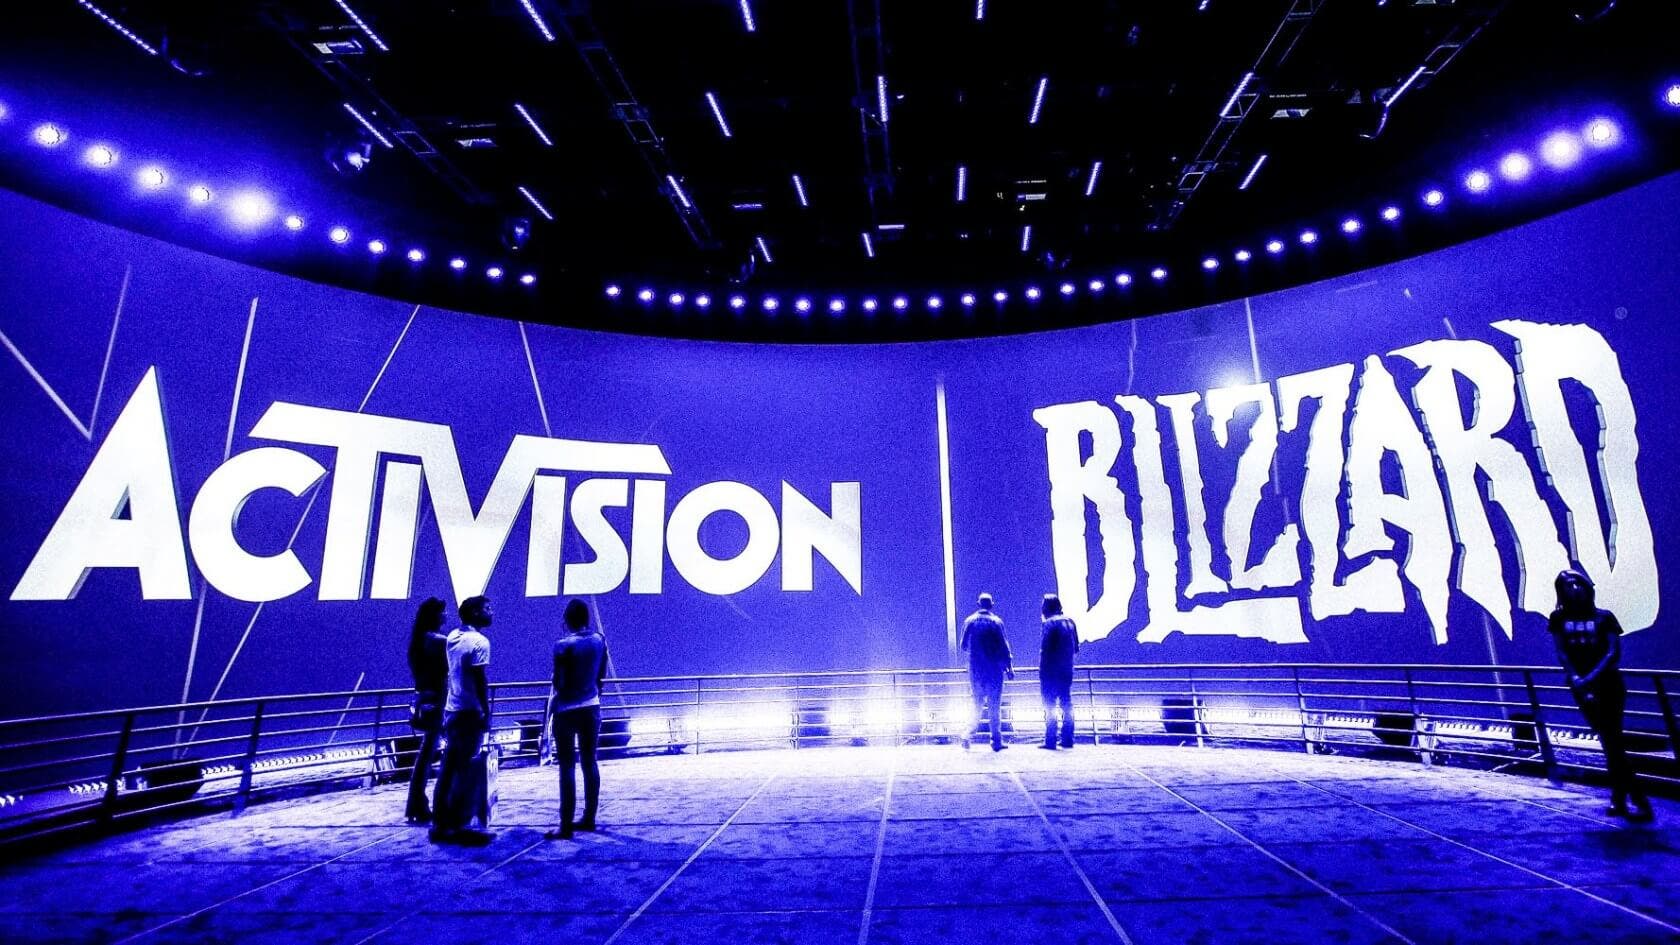 Activision Blizzard despedirá al 8% de sus trabajadores a pesar de conseguir resultados financieros récord